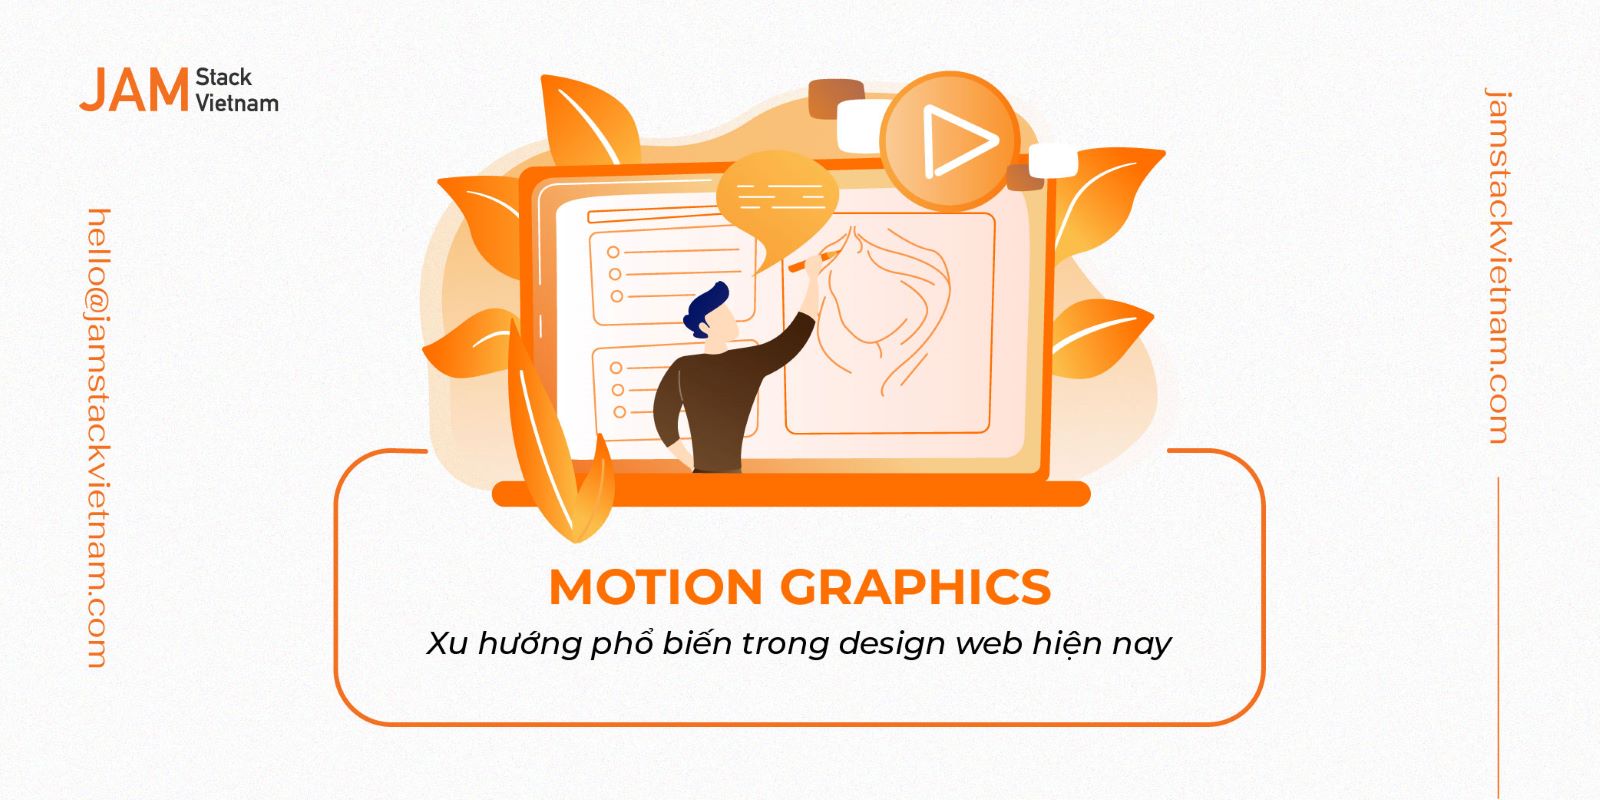 Motion Graphics - Xu hướng phổ biến trong design web hiện nay